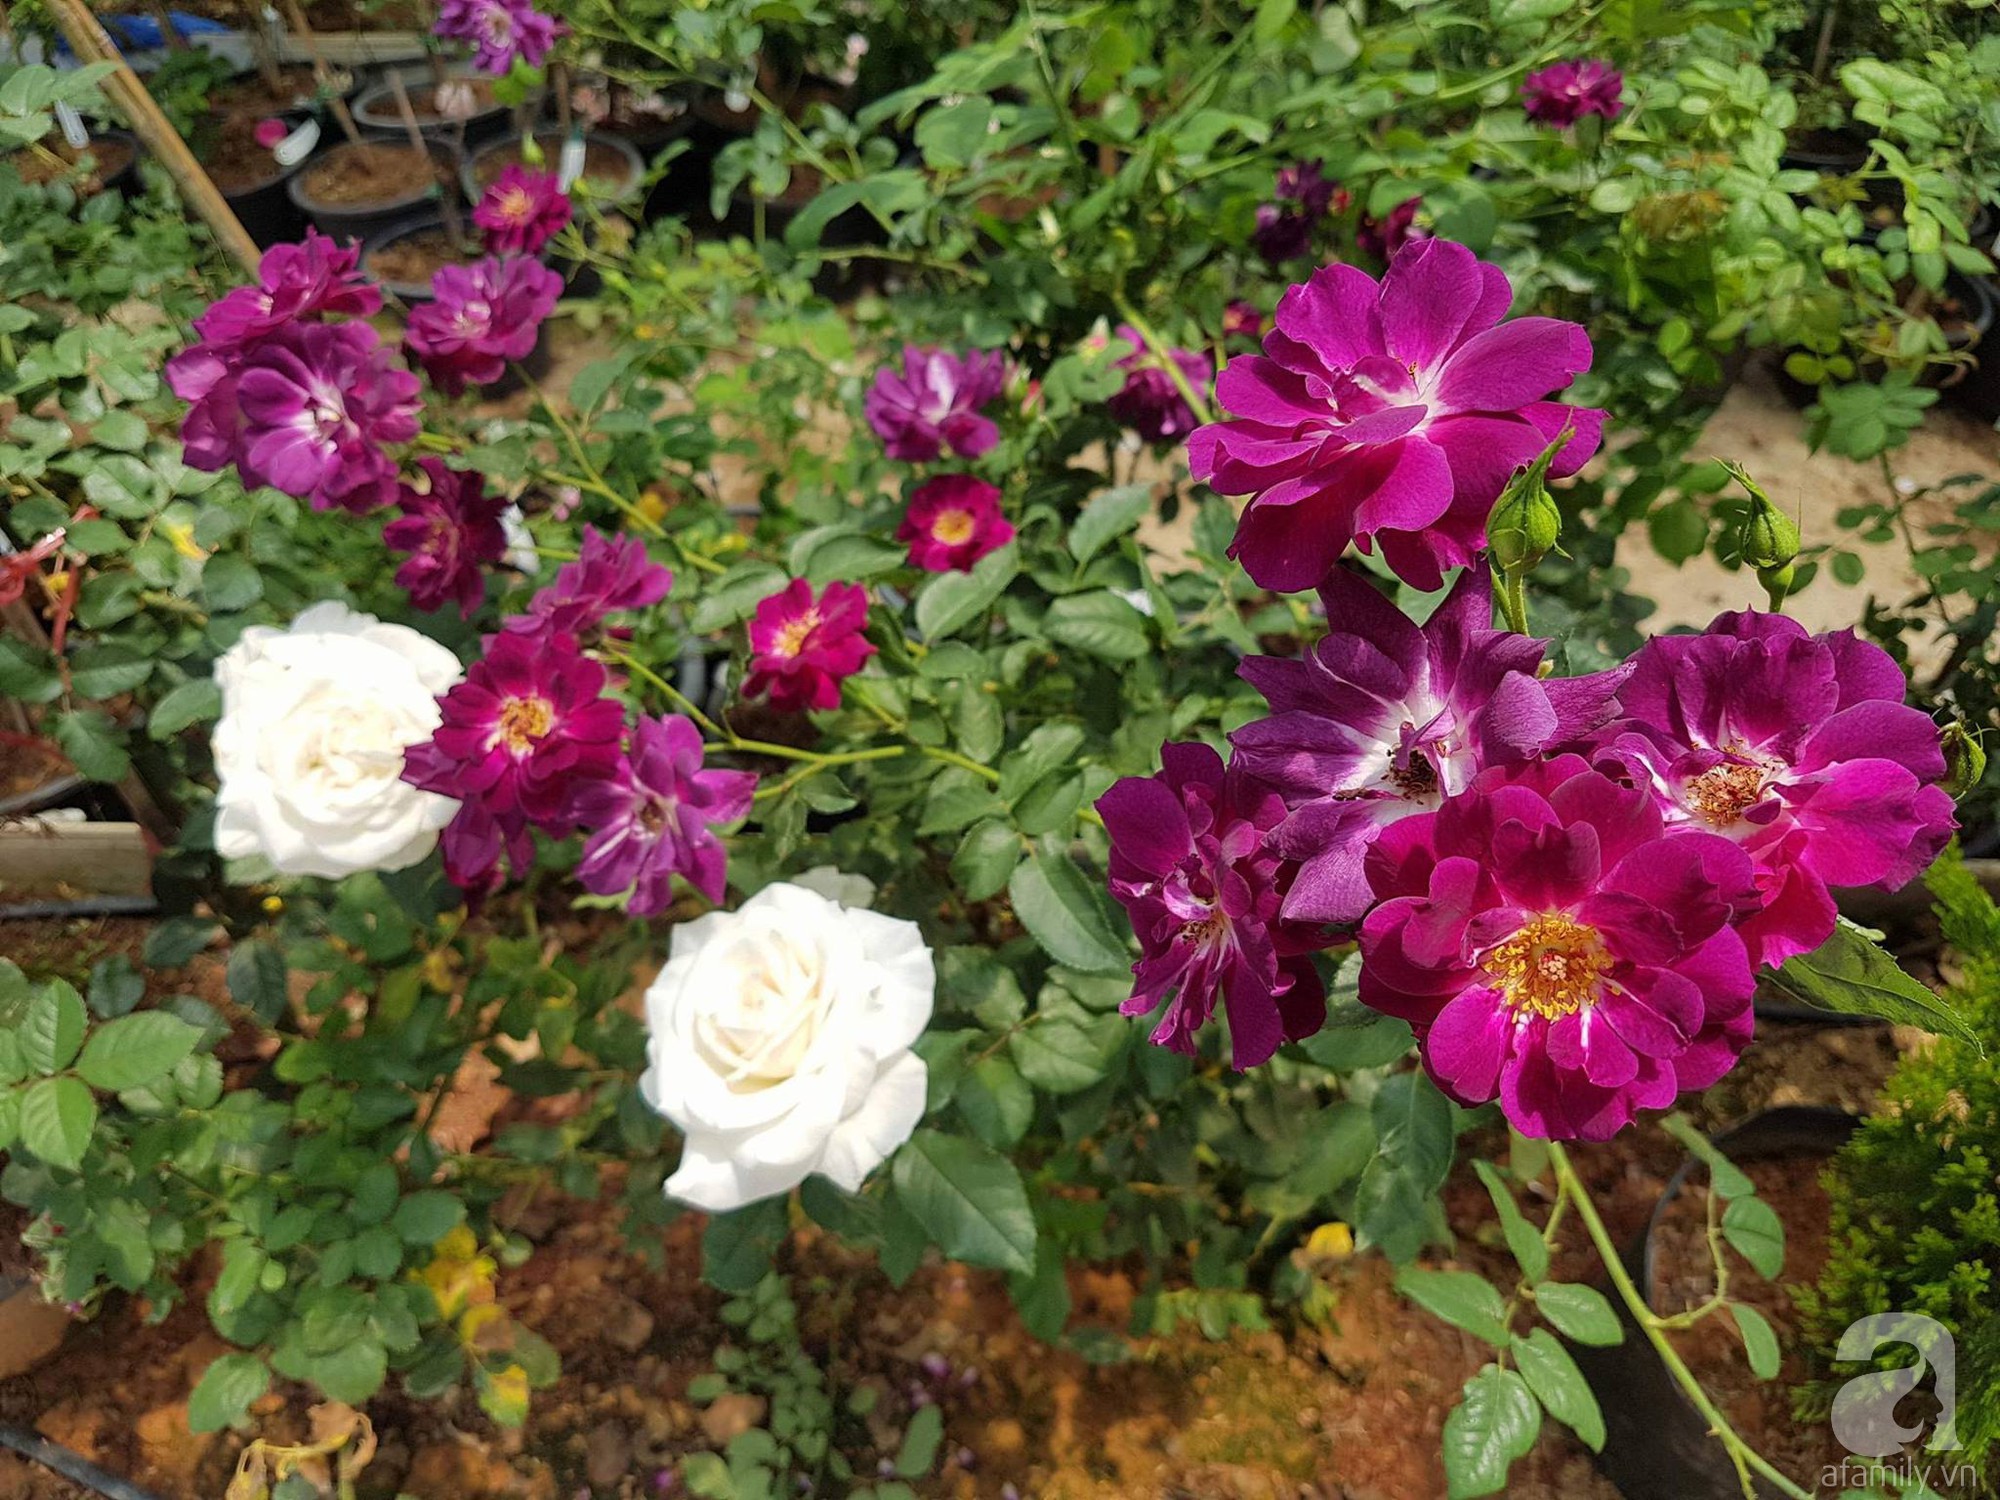 Mê mẩn khu vườn hoa hồng đẹp như mơ ở Đà Lạt - Ảnh 26.